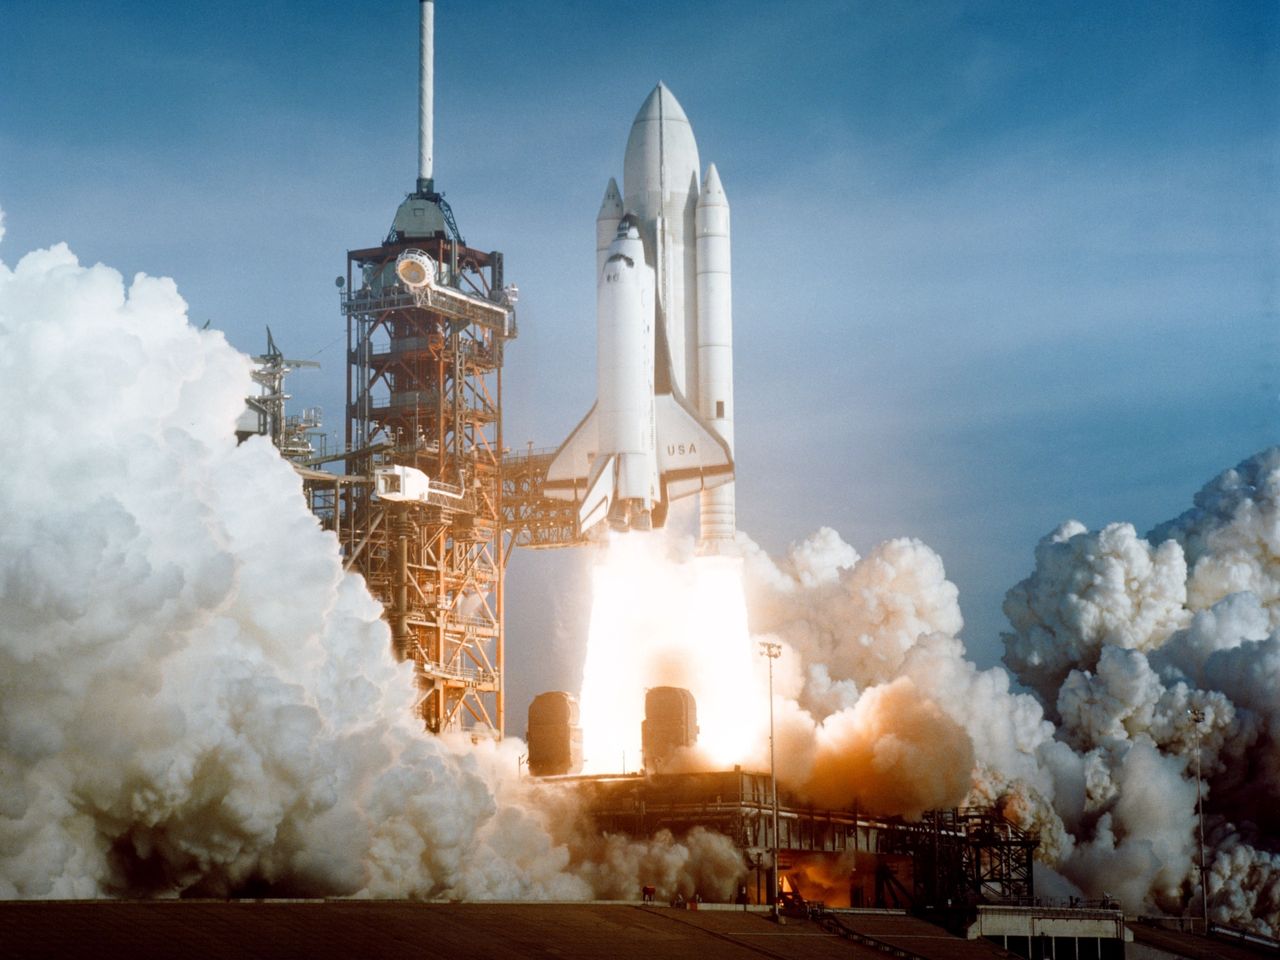 Zachwycająca porażka, czyli 6 faktów o amerykańskich wahadłowcach - Pierwszy załogowy start promu kosmicznego. Startuje wahadłowiec Columbia, 1981 r.